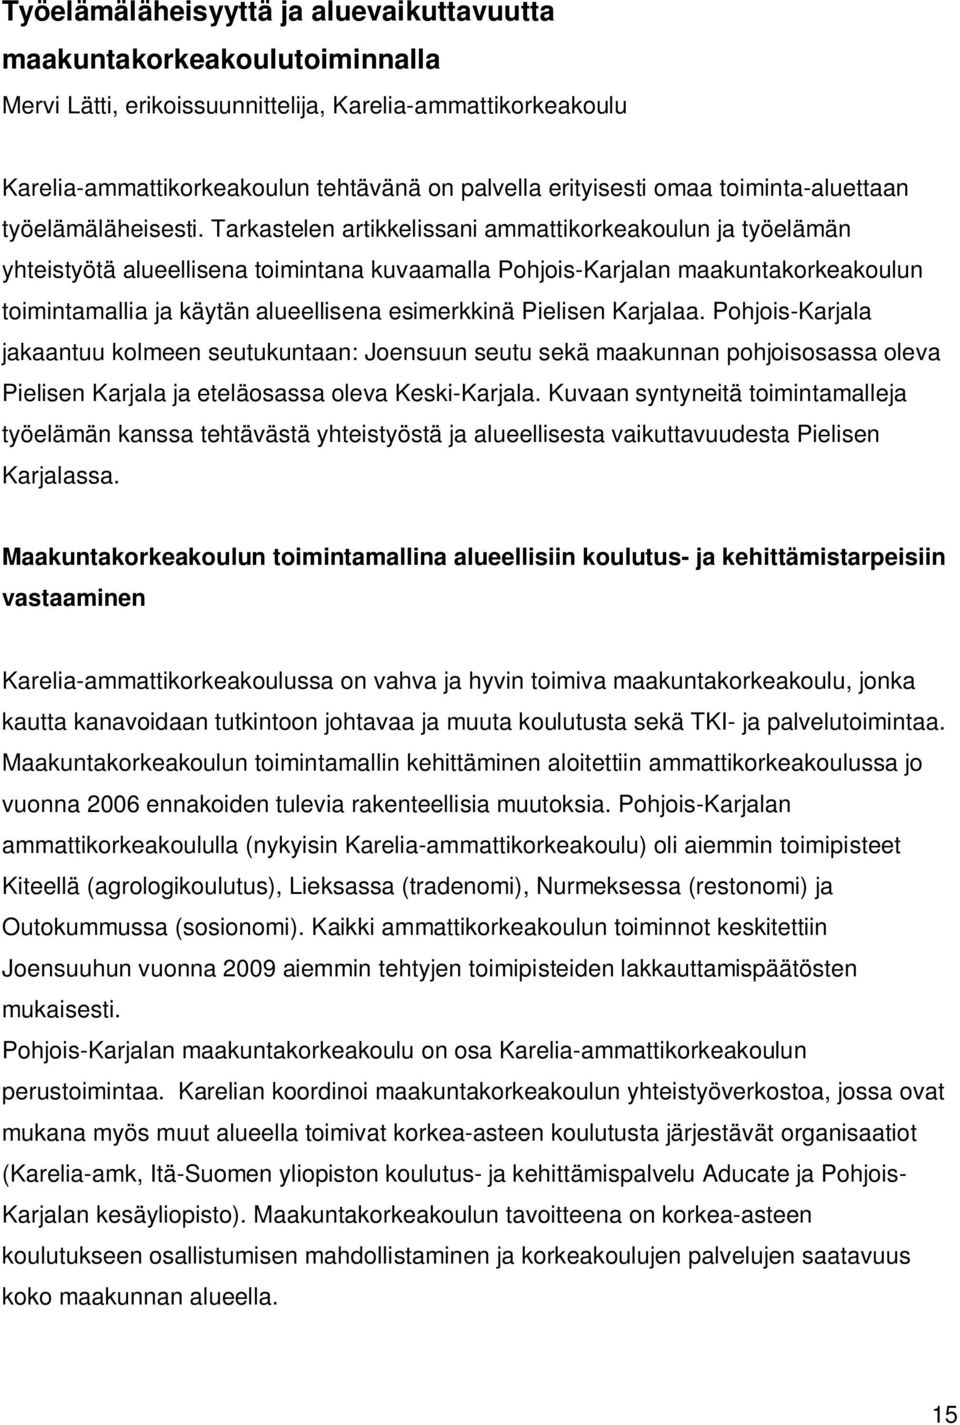 Tarkastelen artikkelissani ammattikorkeakoulun ja työelämän yhteistyötä alueellisena toimintana kuvaamalla Pohjois-Karjalan maakuntakorkeakoulun toimintamallia ja käytän alueellisena esimerkkinä